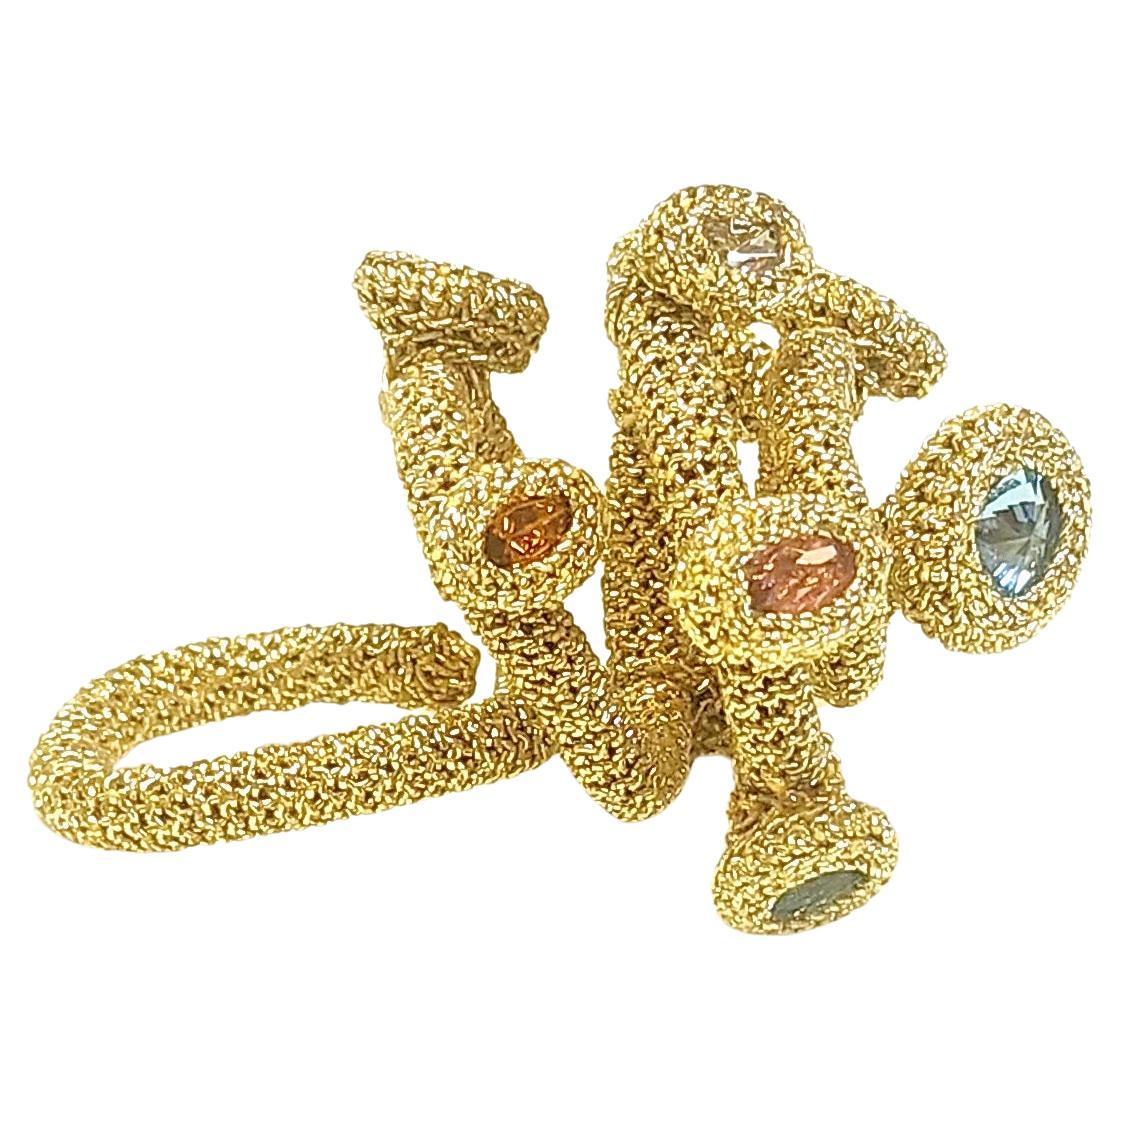 Golden Thread Crochet Ring Swarovski Crystals